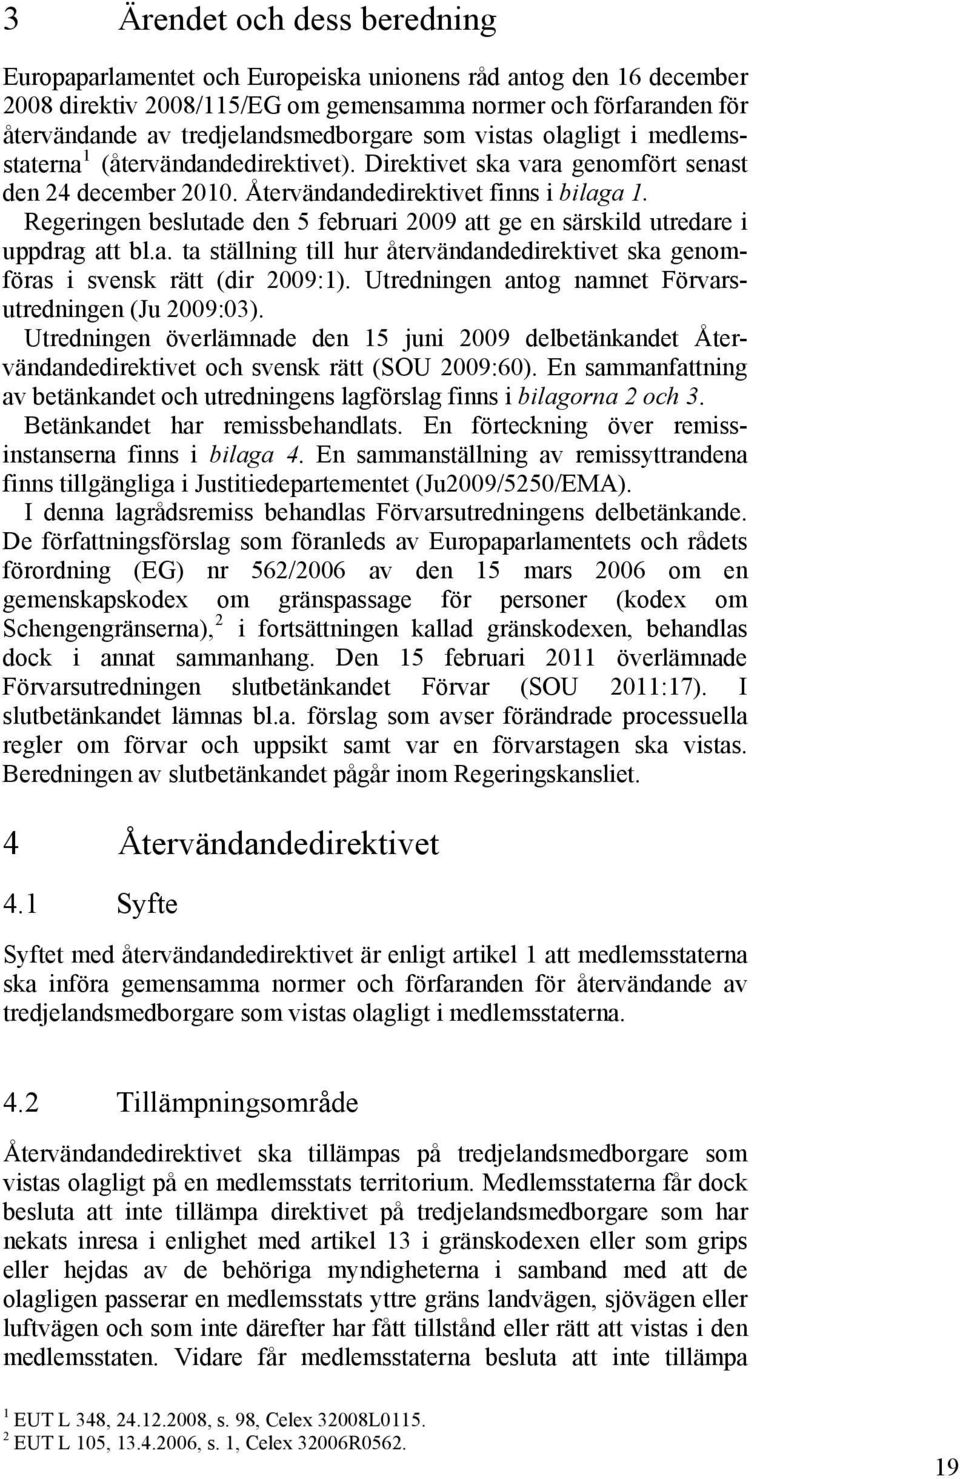 Regeringen beslutade den 5 februari 2009 att ge en särskild utredare i uppdrag att bl.a. ta ställning till hur återvändandedirektivet ska genomföras i svensk rätt (dir 2009:1).